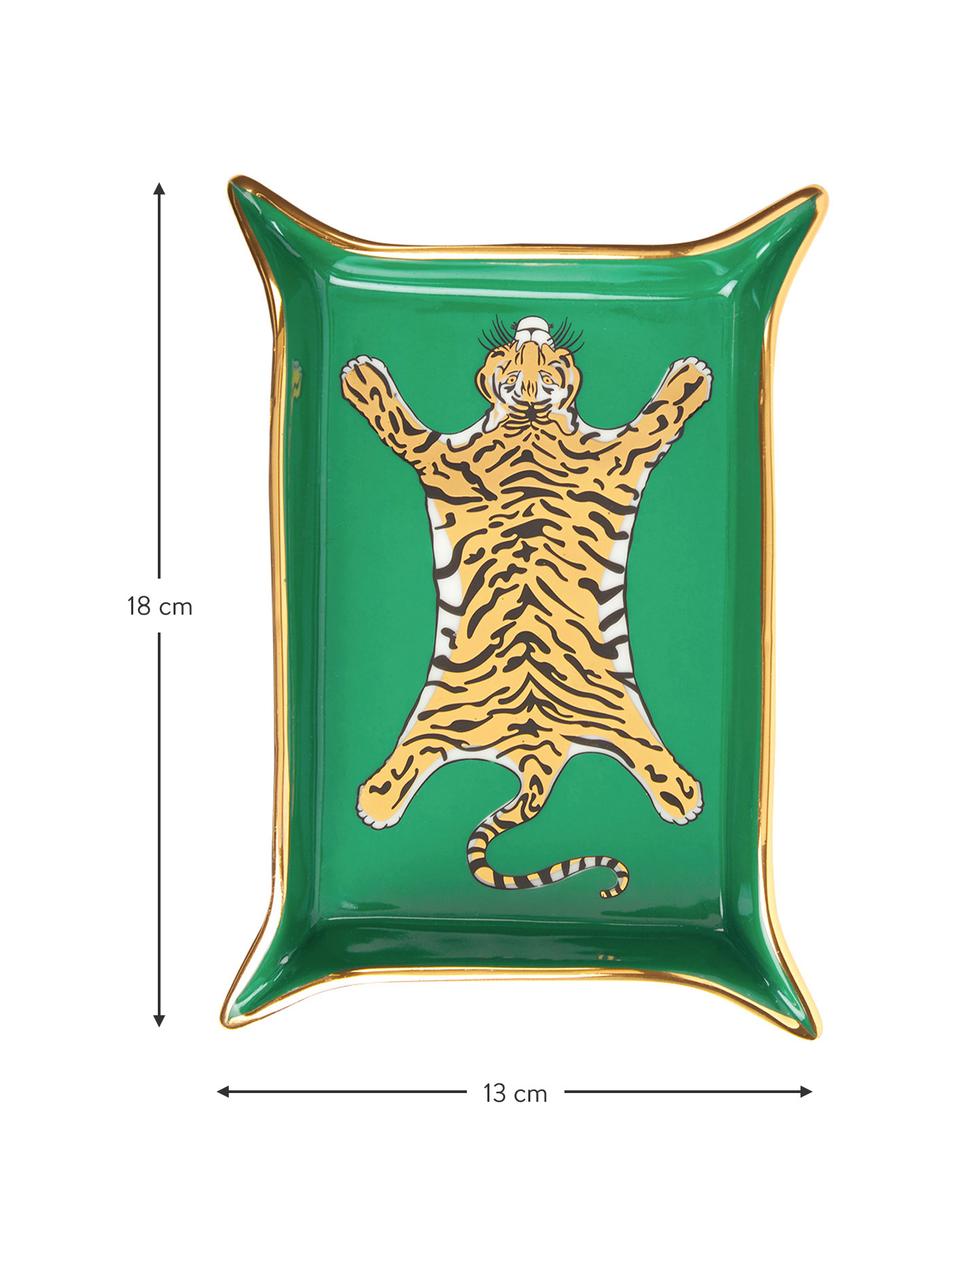 Bol Tiger, Porcelana, detalles dorados, Verde, dorado, tonos beige, blanco, An 18 x F 13 cm